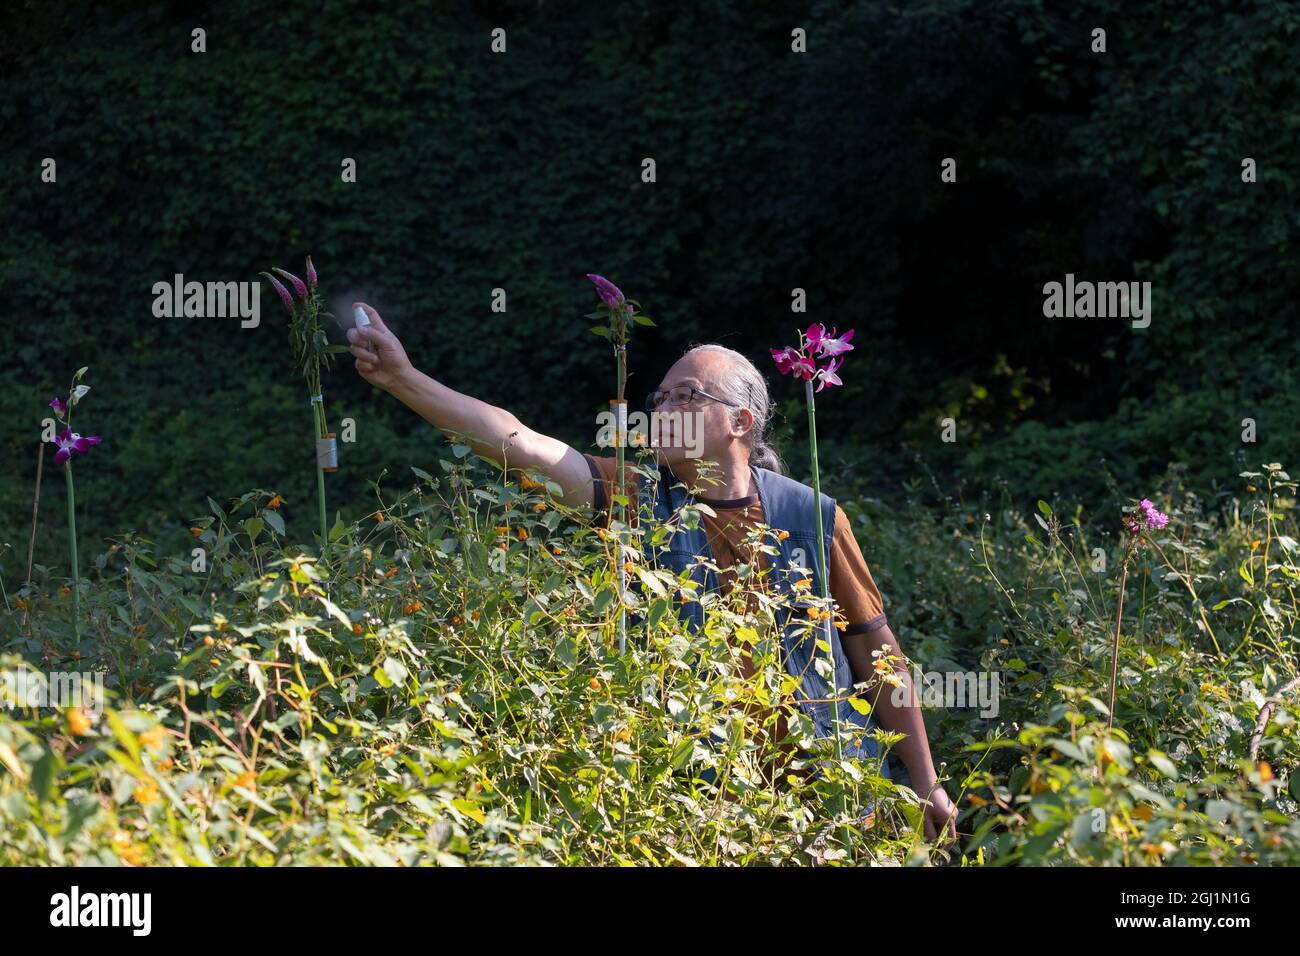 Ein Vogelfotograf sprüht Zuckerwasser auf Blumen, die er mitgebracht hat, um Kolibris zu locken. In einem Park in Queens, New York. Stockfoto